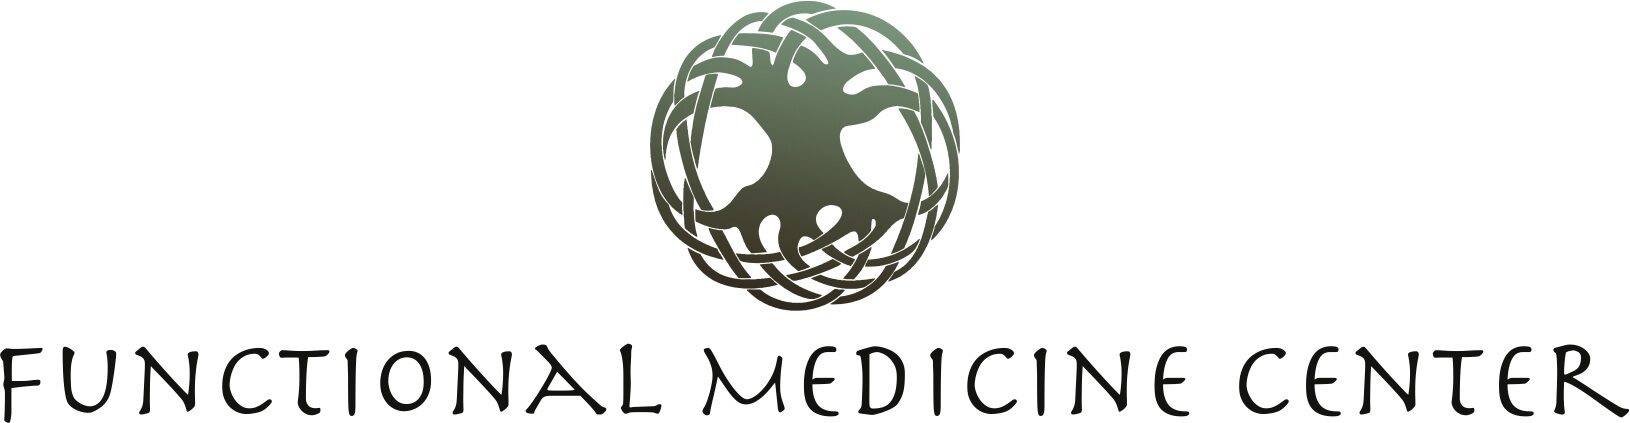 Functional Medicine Center Header Image